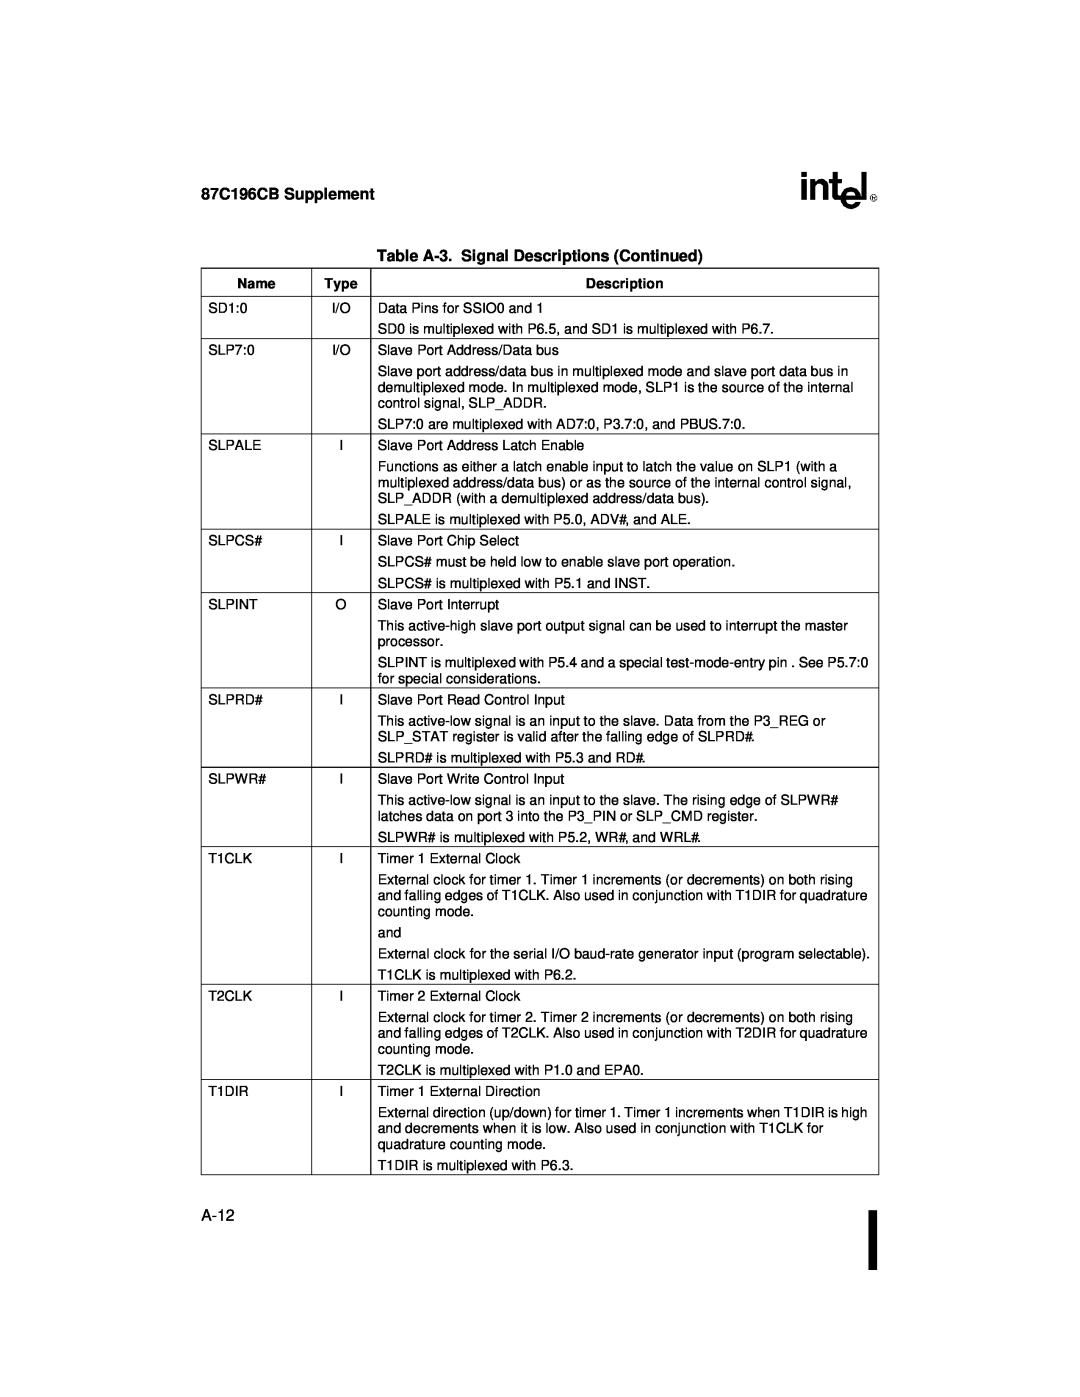 Intel 8XC196NT user manual 87C196CB Supplement, Table A-3. Signal Descriptions Continued, A-12 